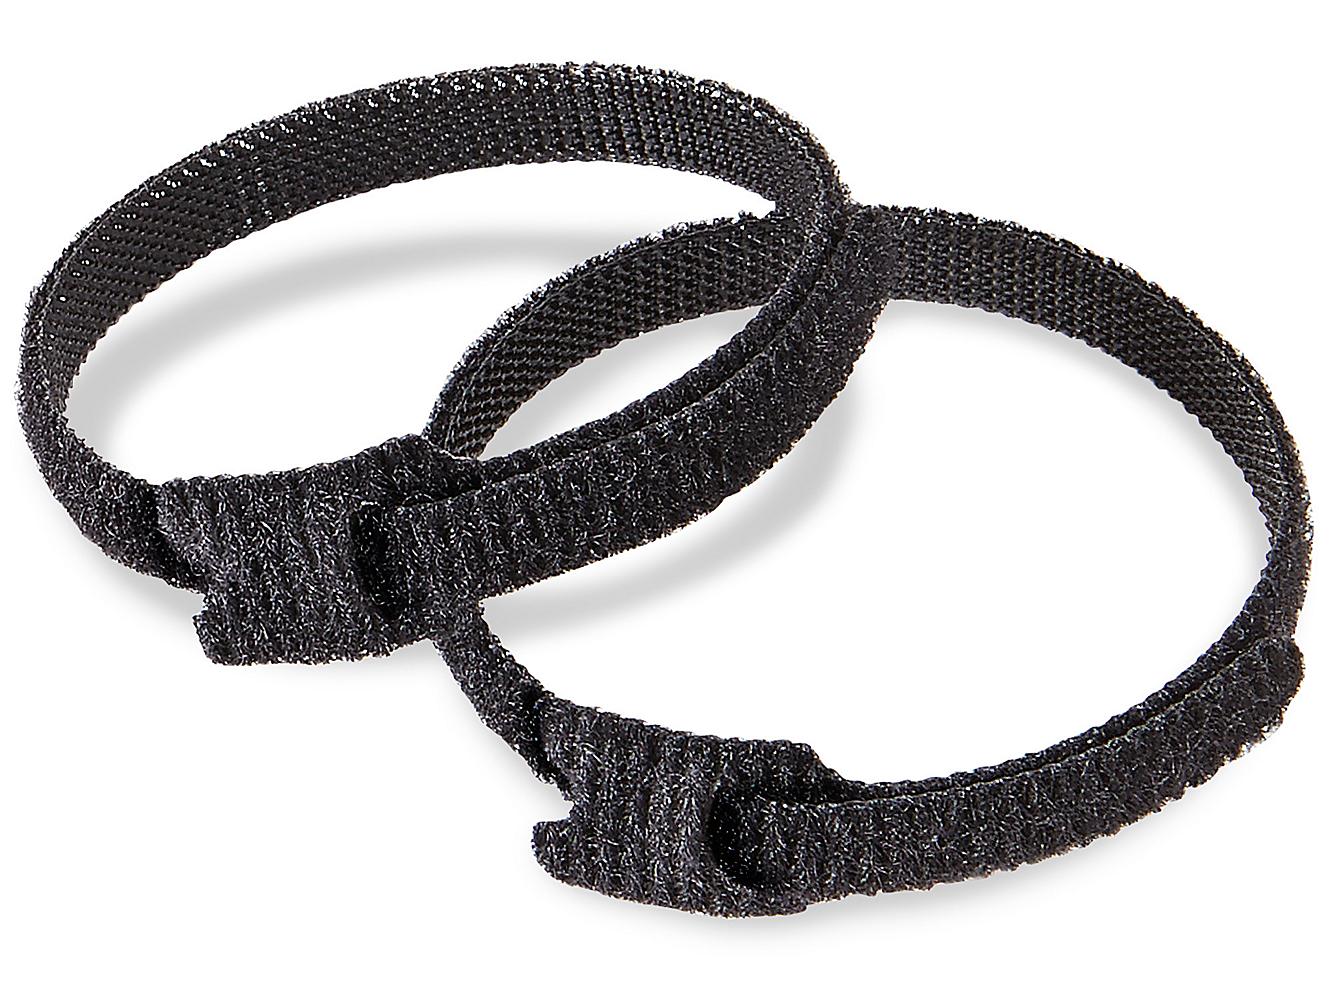 Illustrer For pokker Modsige Velcro® Brand Cable Ties - 1/2 x 8", Black S-19436 - Uline